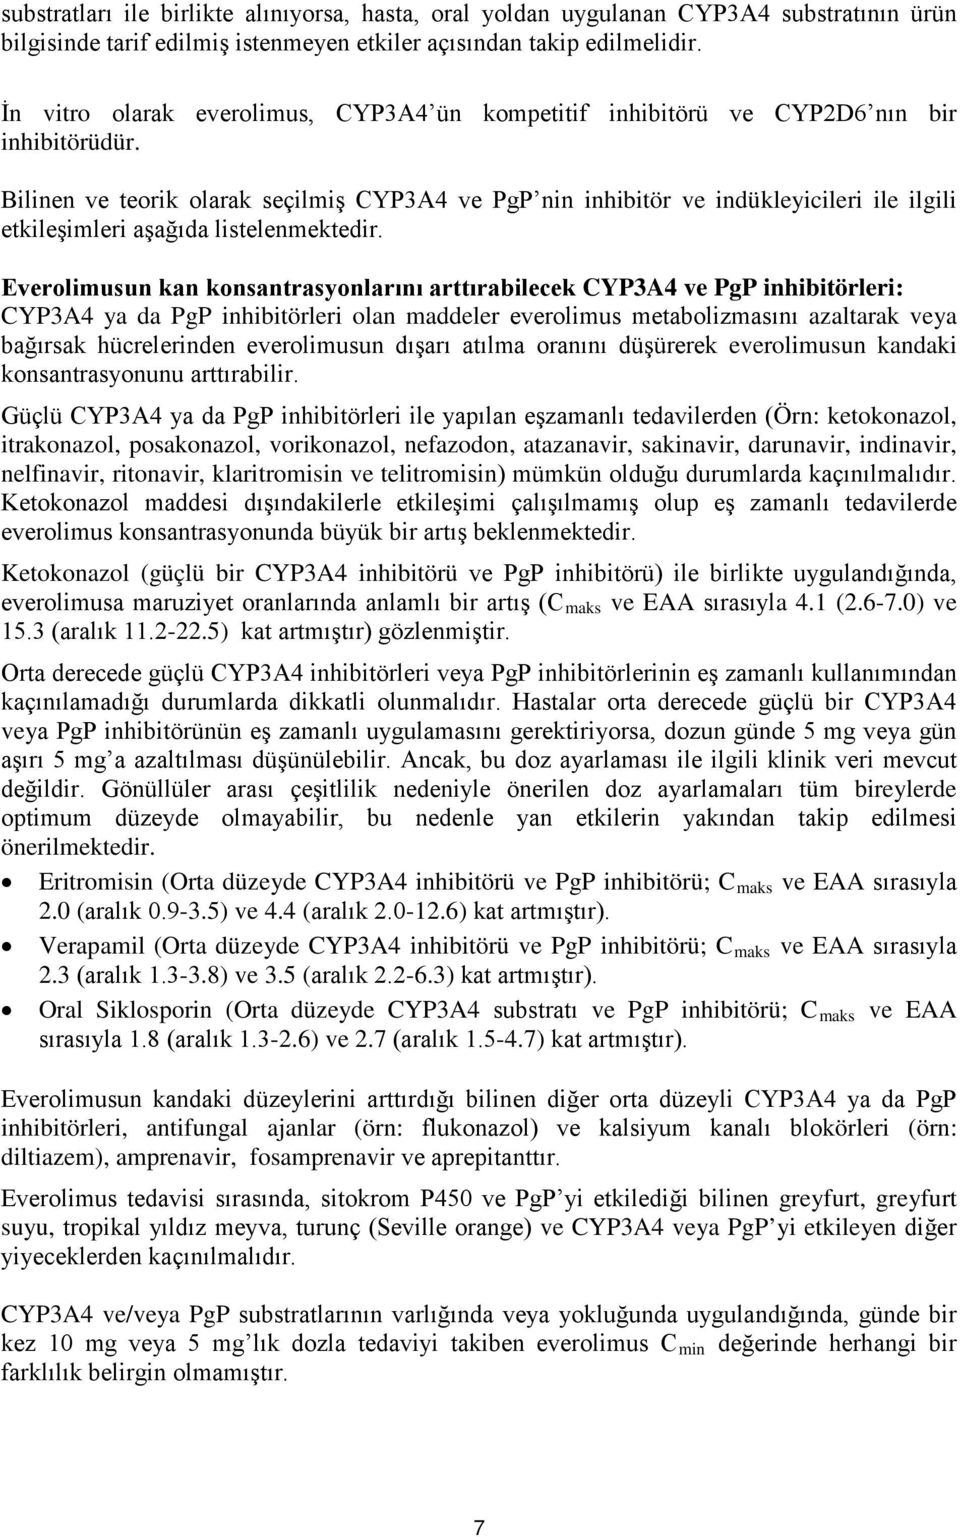 Bilinen ve teorik olarak seçilmiş CYP3A4 ve PgP nin inhibitör ve indükleyicileri ile ilgili etkileşimleri aşağıda listelenmektedir.